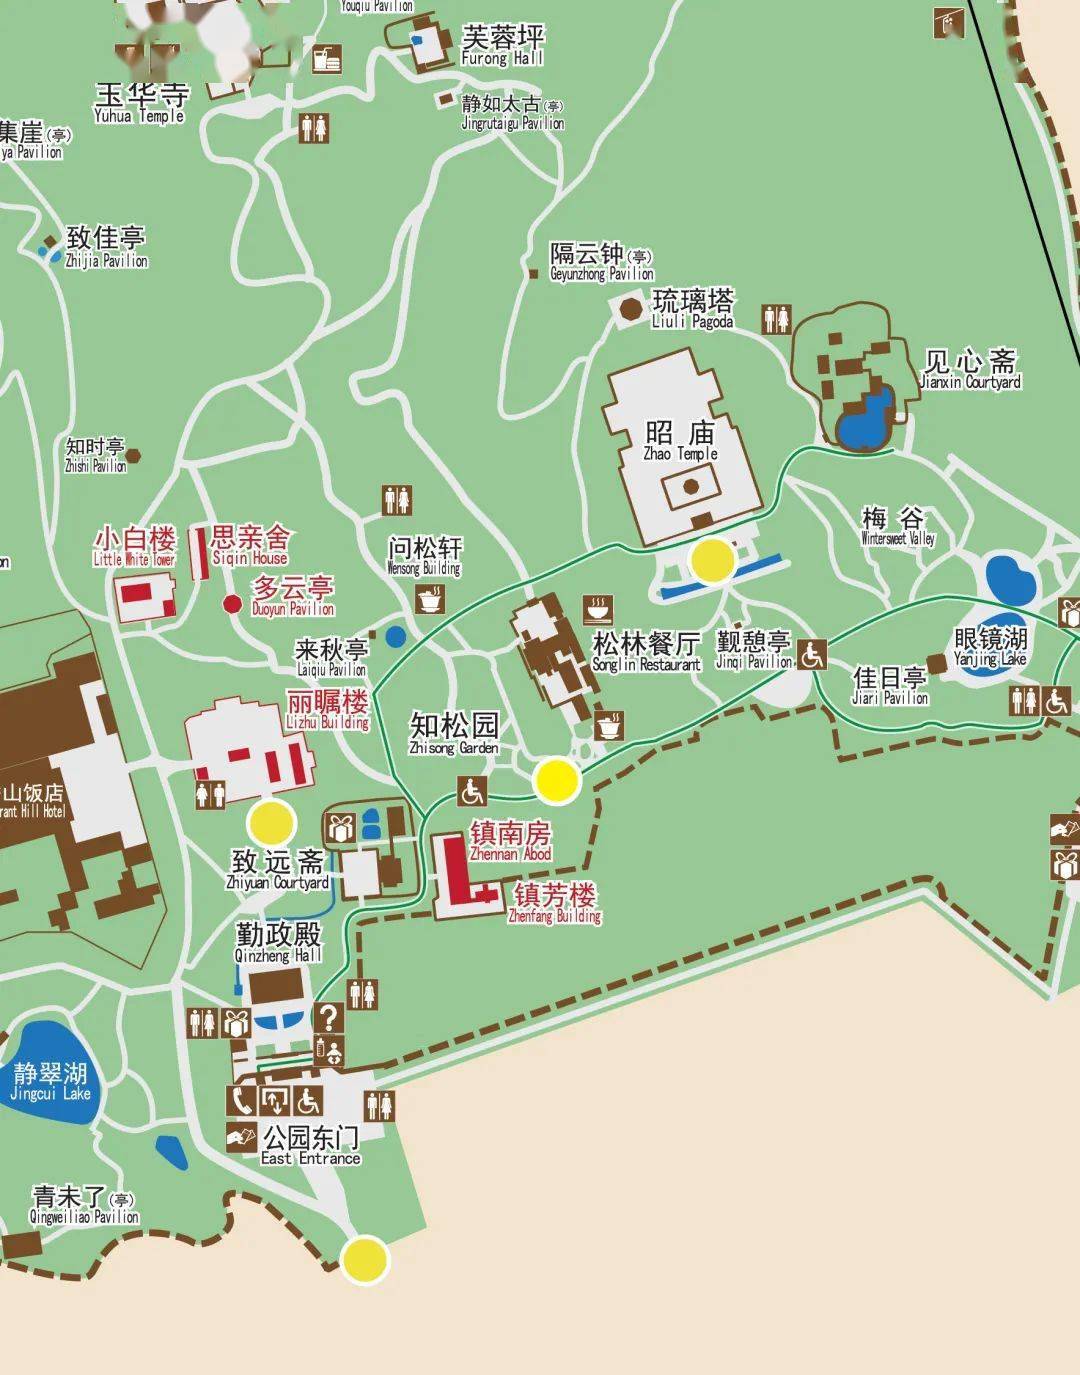 香山公园游览图高清图片